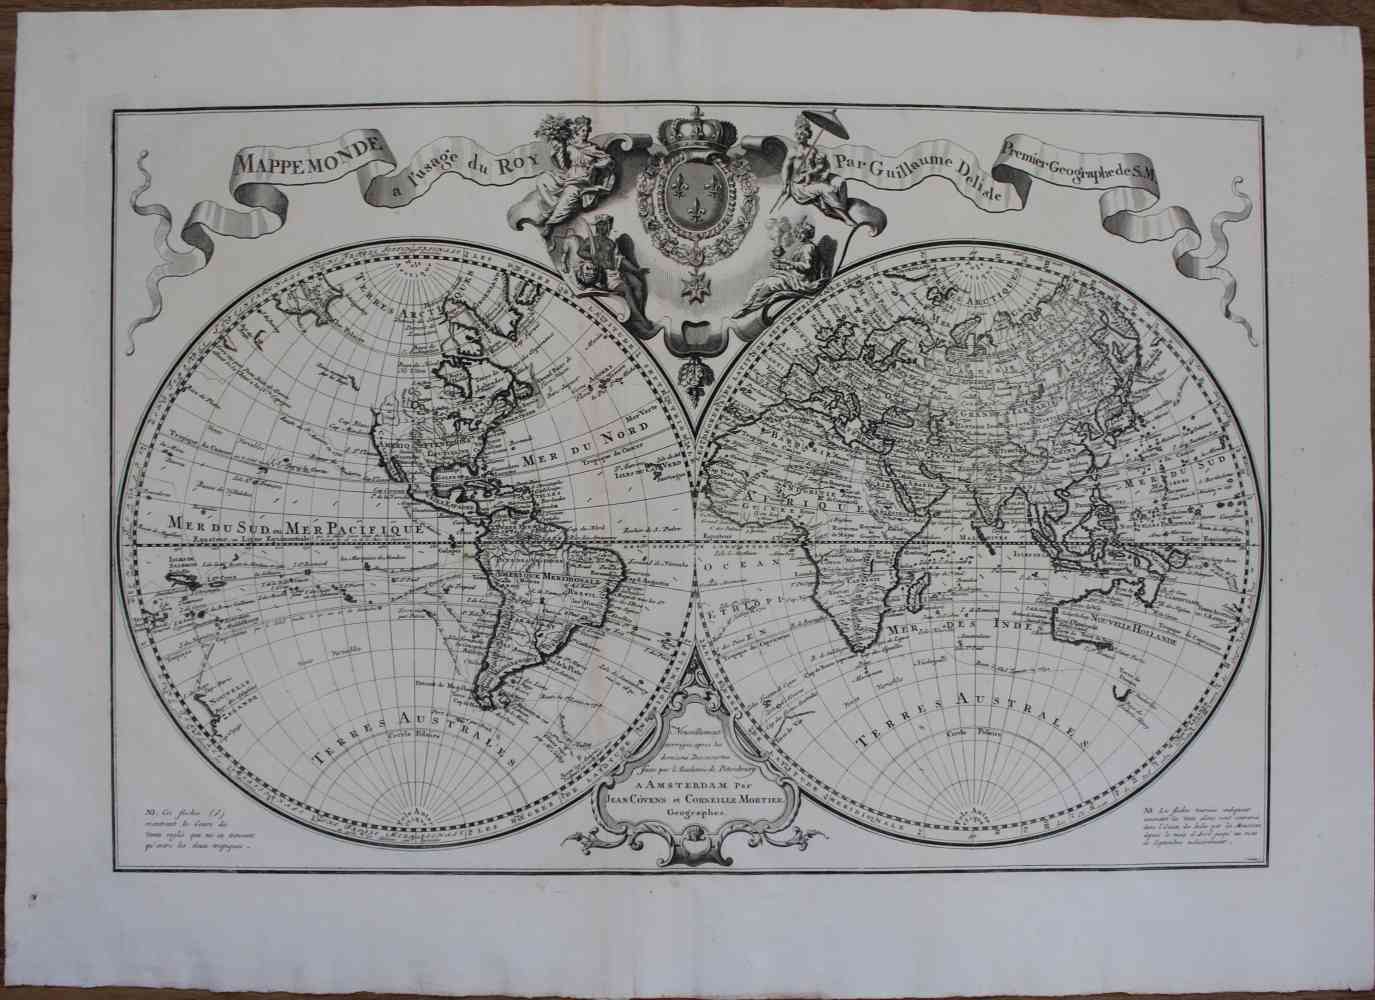 Mappe Monde A L Usage Du Roy Par Guillaume Delisle Bertolami Fine